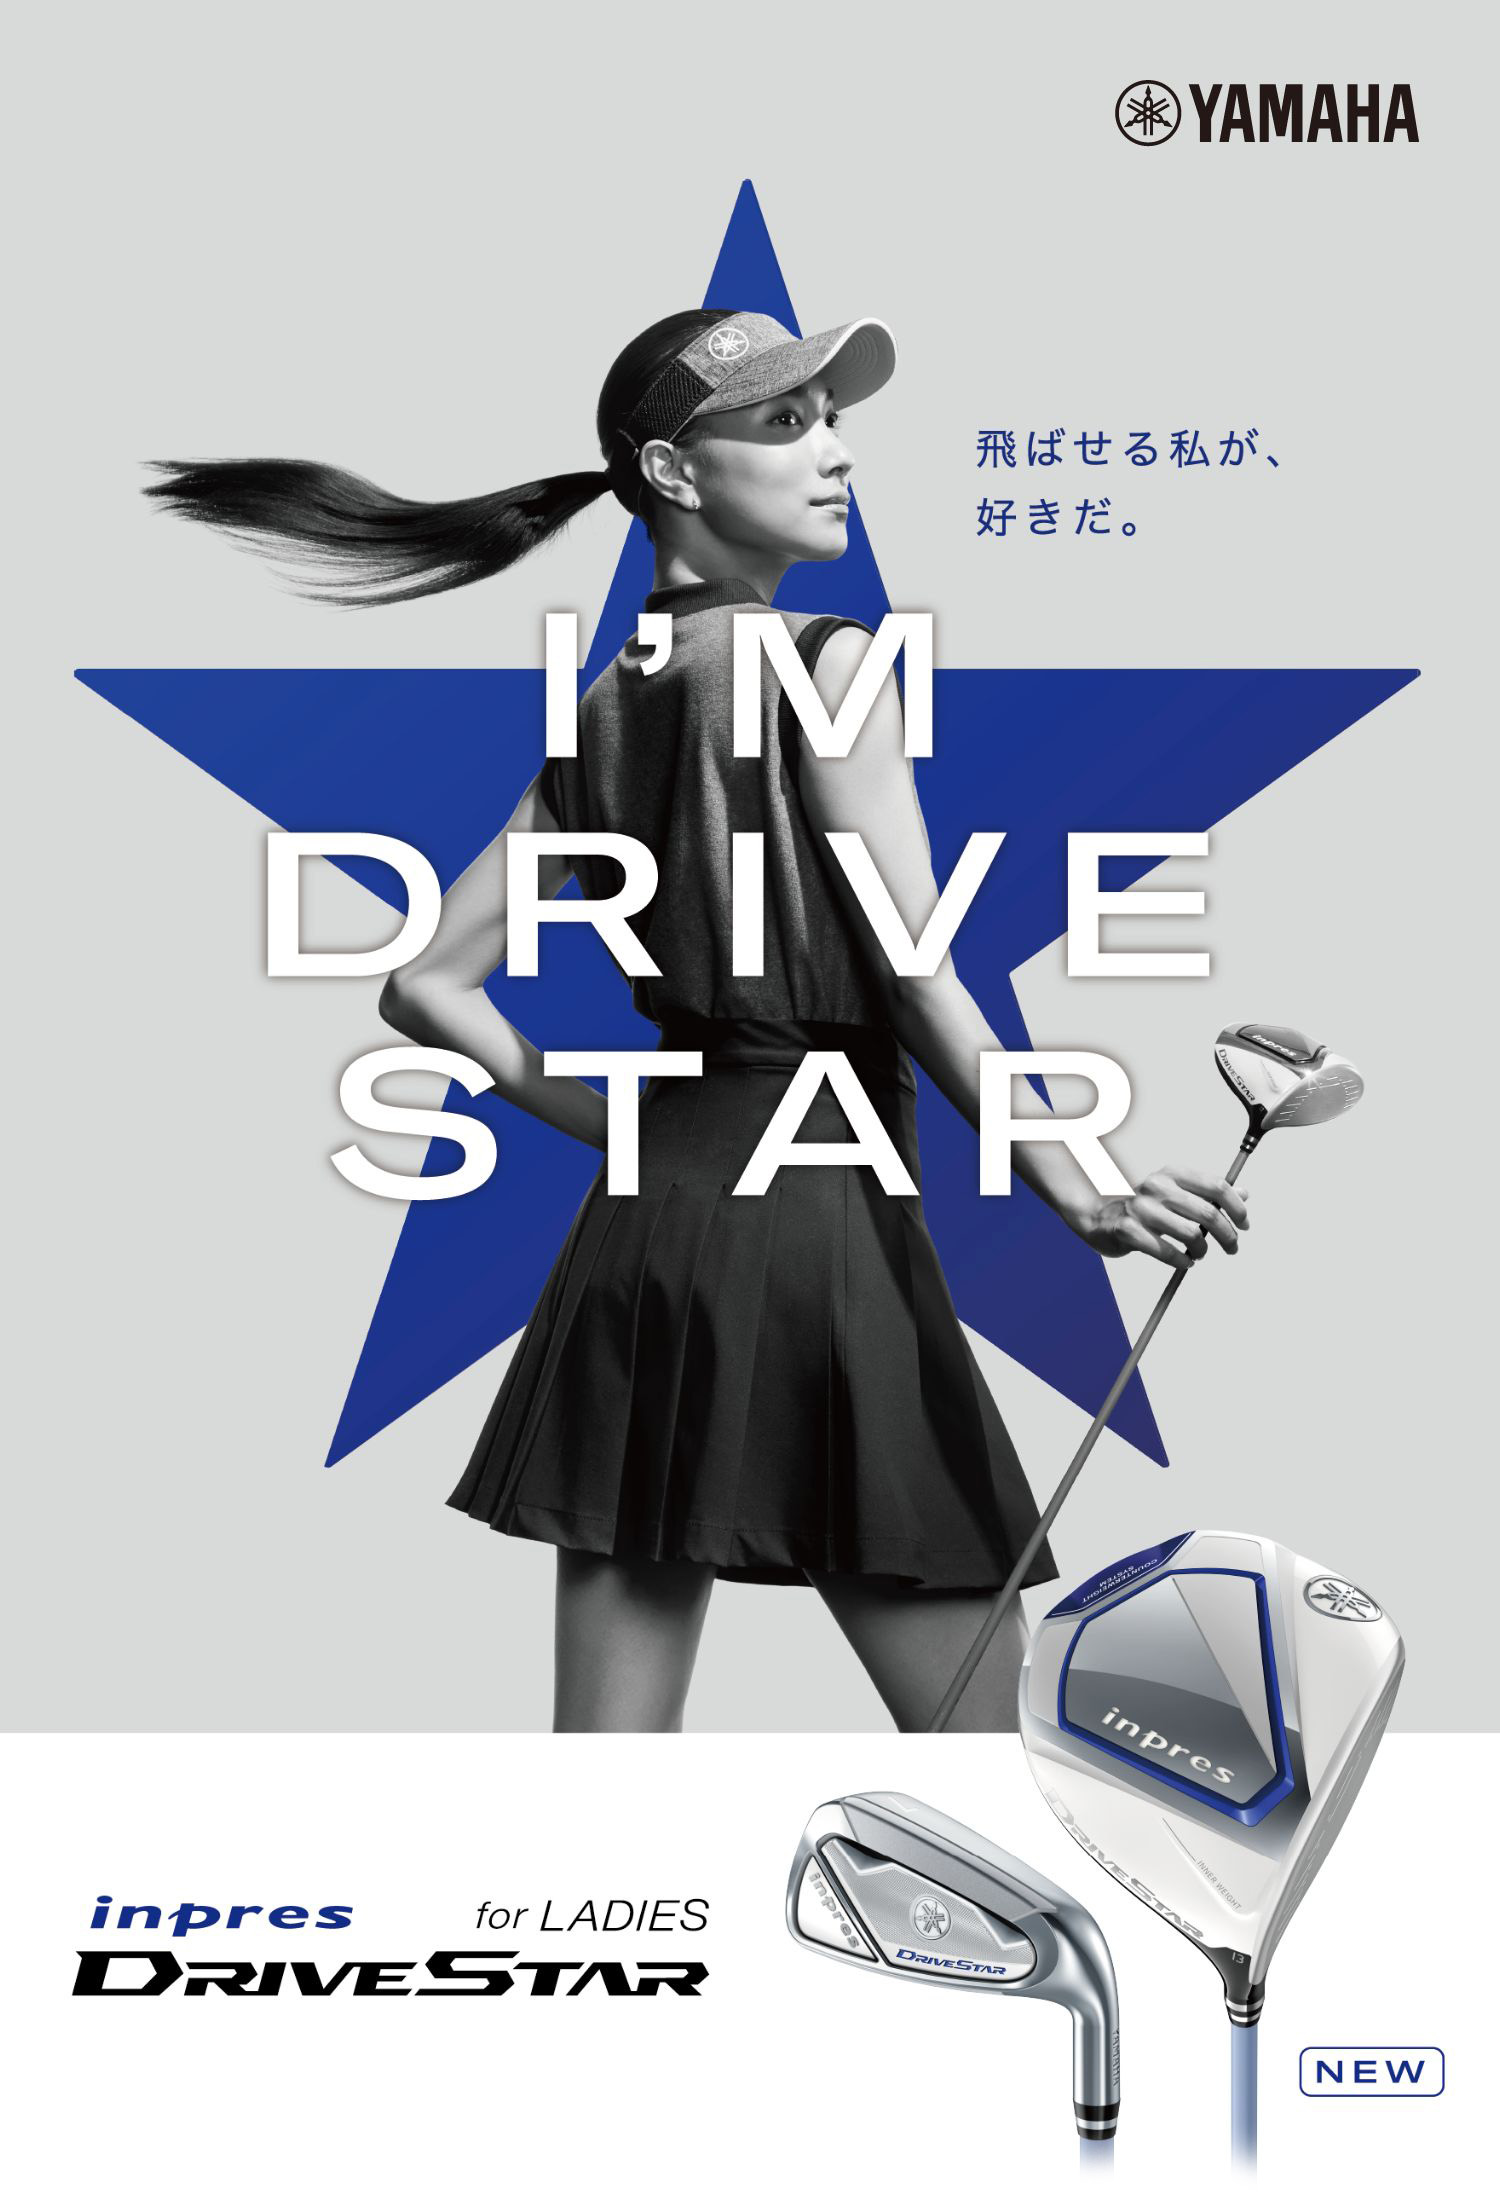 ヤマハの最新クラブ「inpres DRIVESTAR(インプレス ドライブスター)」レディースモデルを買うならゴルフ5